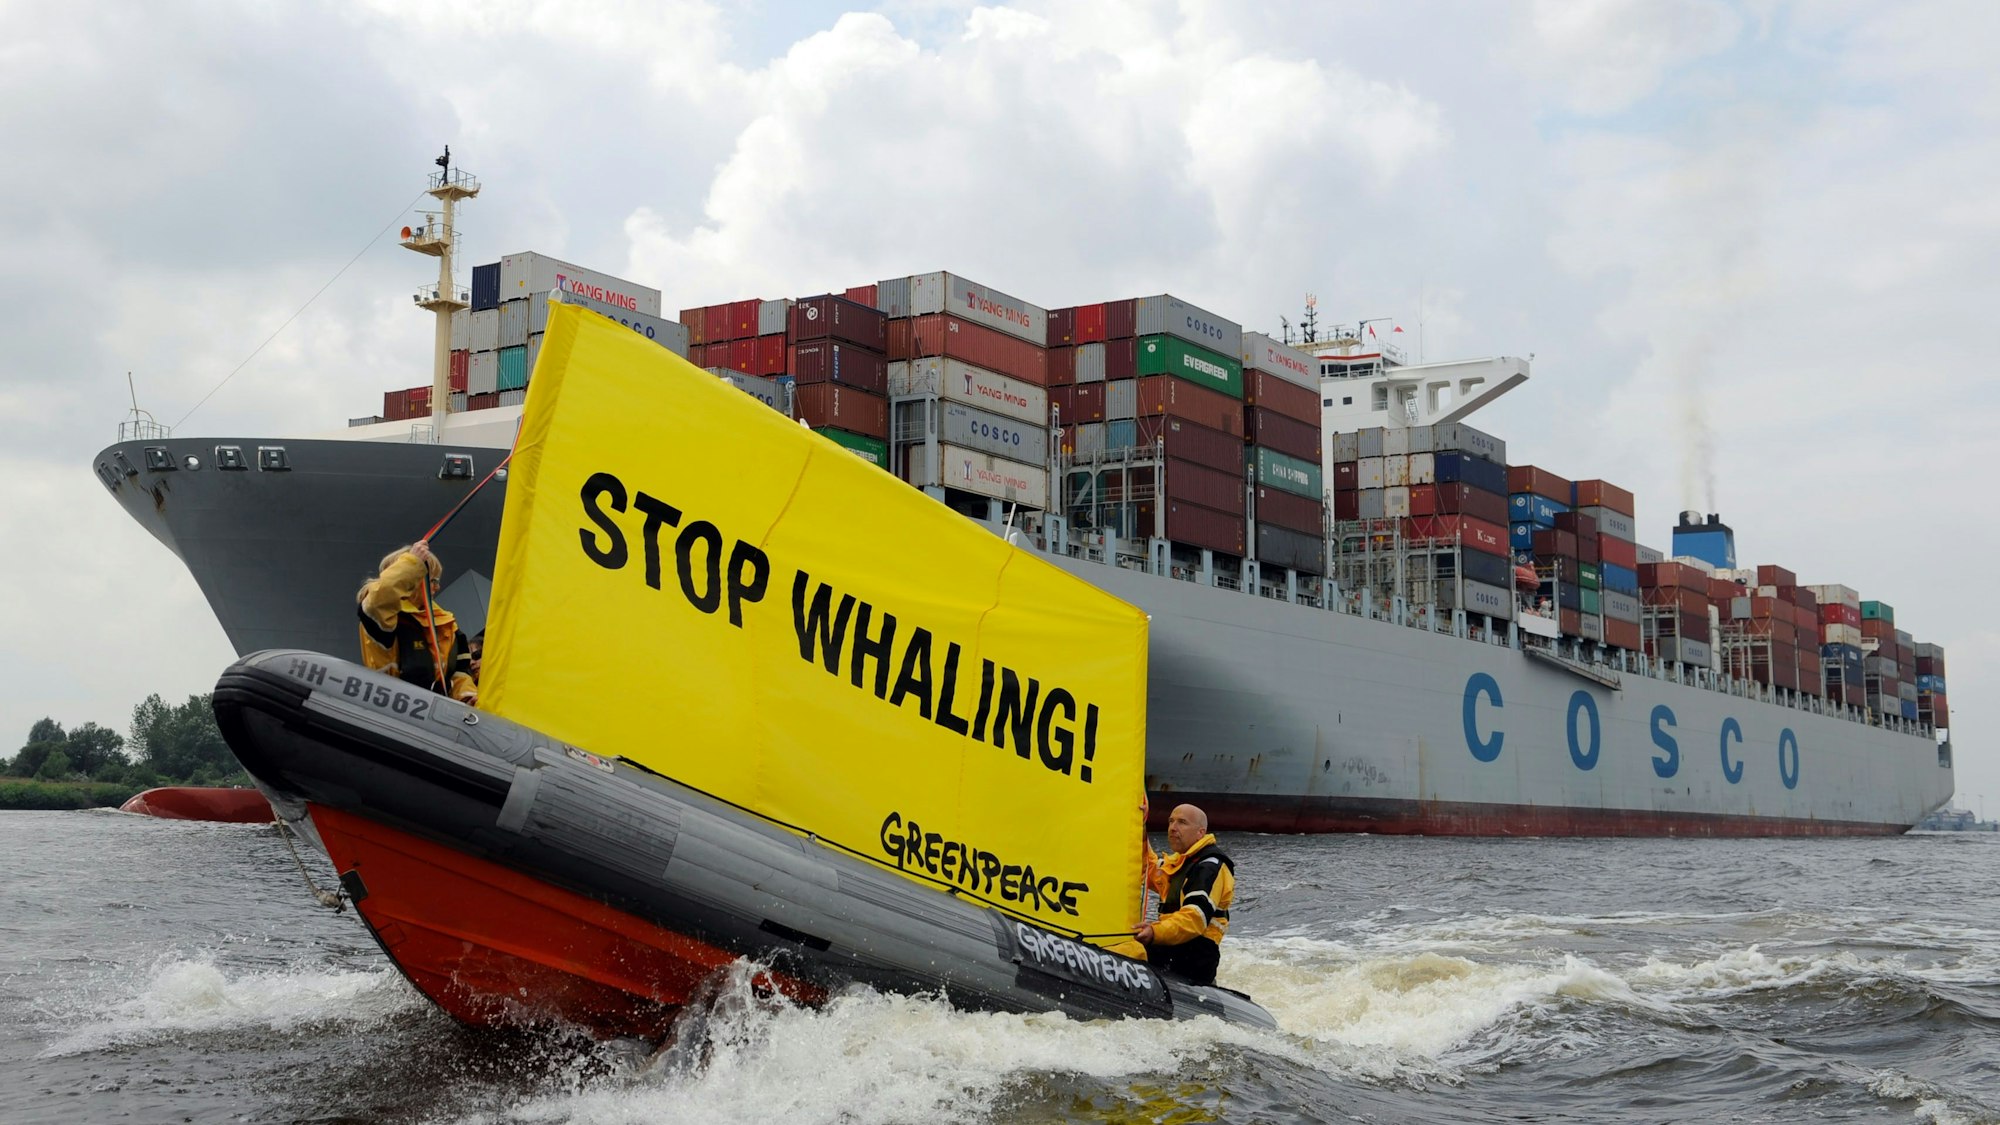 Greenpeace-Aktivisten fahren am 05.07.2013 in Hamburg mit einem Schlauchboot und einem Transparent mit der Aufschrift "Stop Whaling" vor dem Containerfrachter "Cosco Pride" her . Nach Greenpeace-Informationen hat der Frachter Container mit Walfleisch geladen.